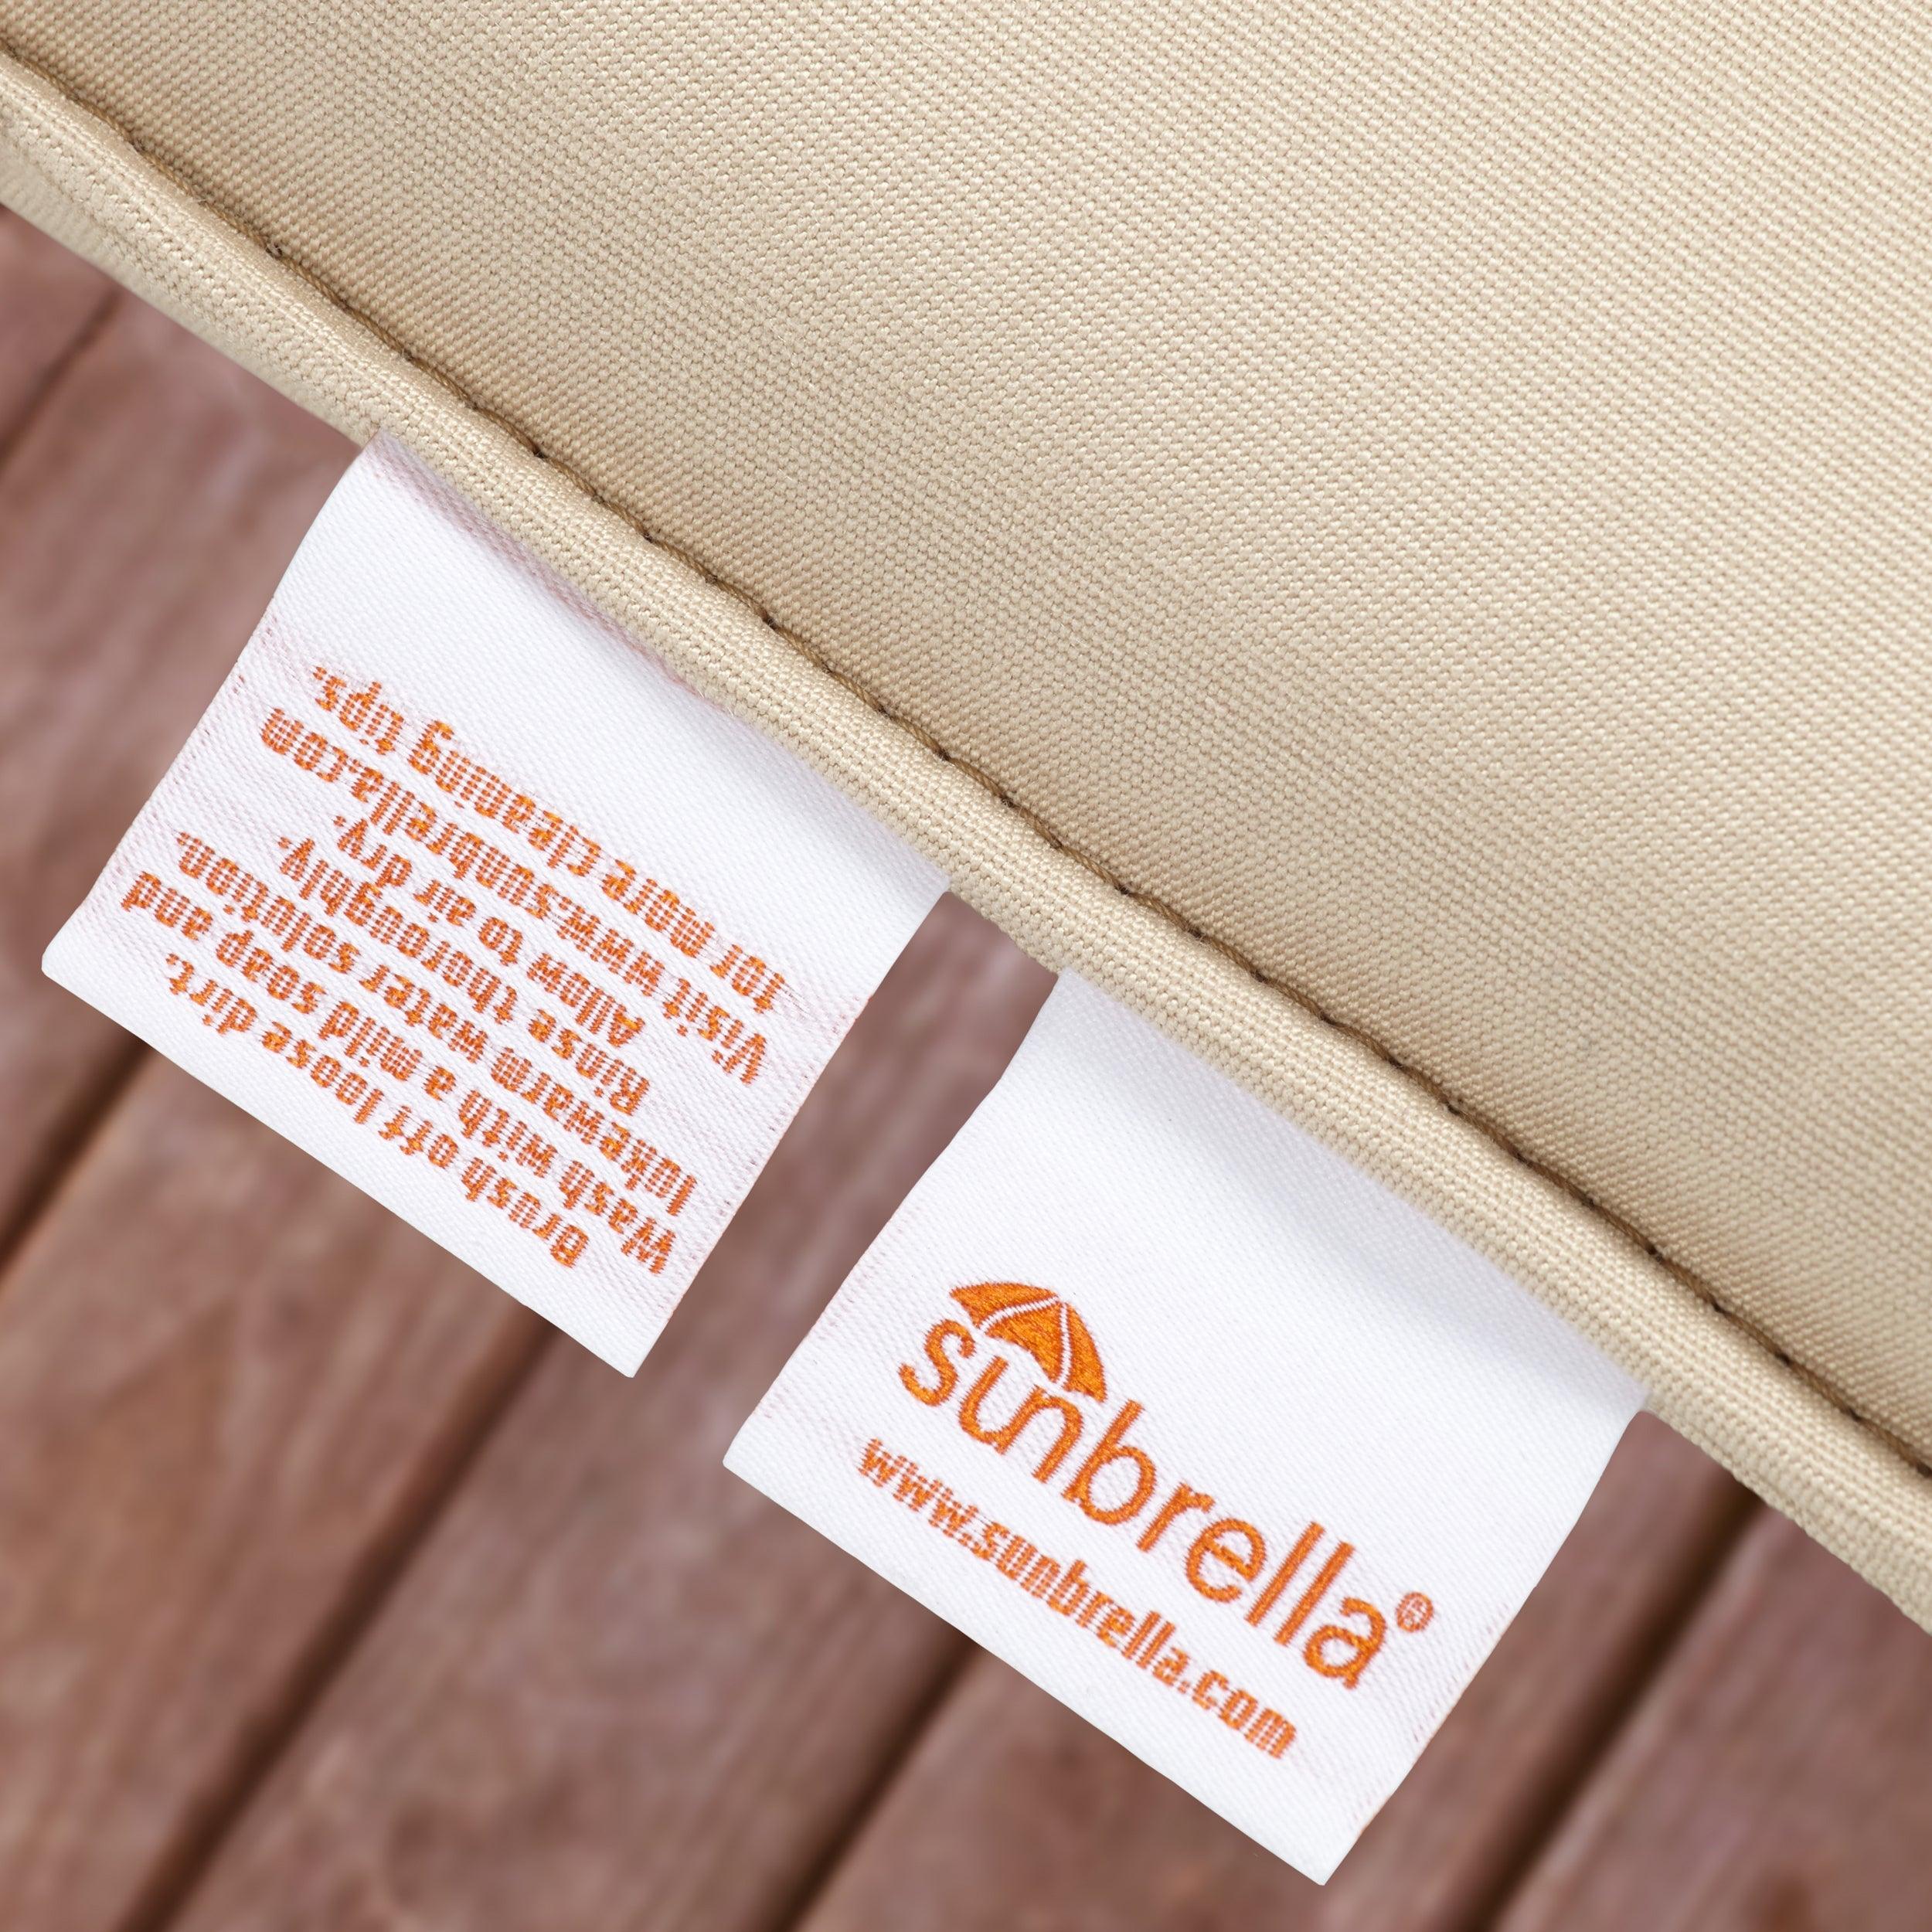 Sunbrella Canvas Deep Seating Sofa Pillow & Cushion Set - Sorra Home